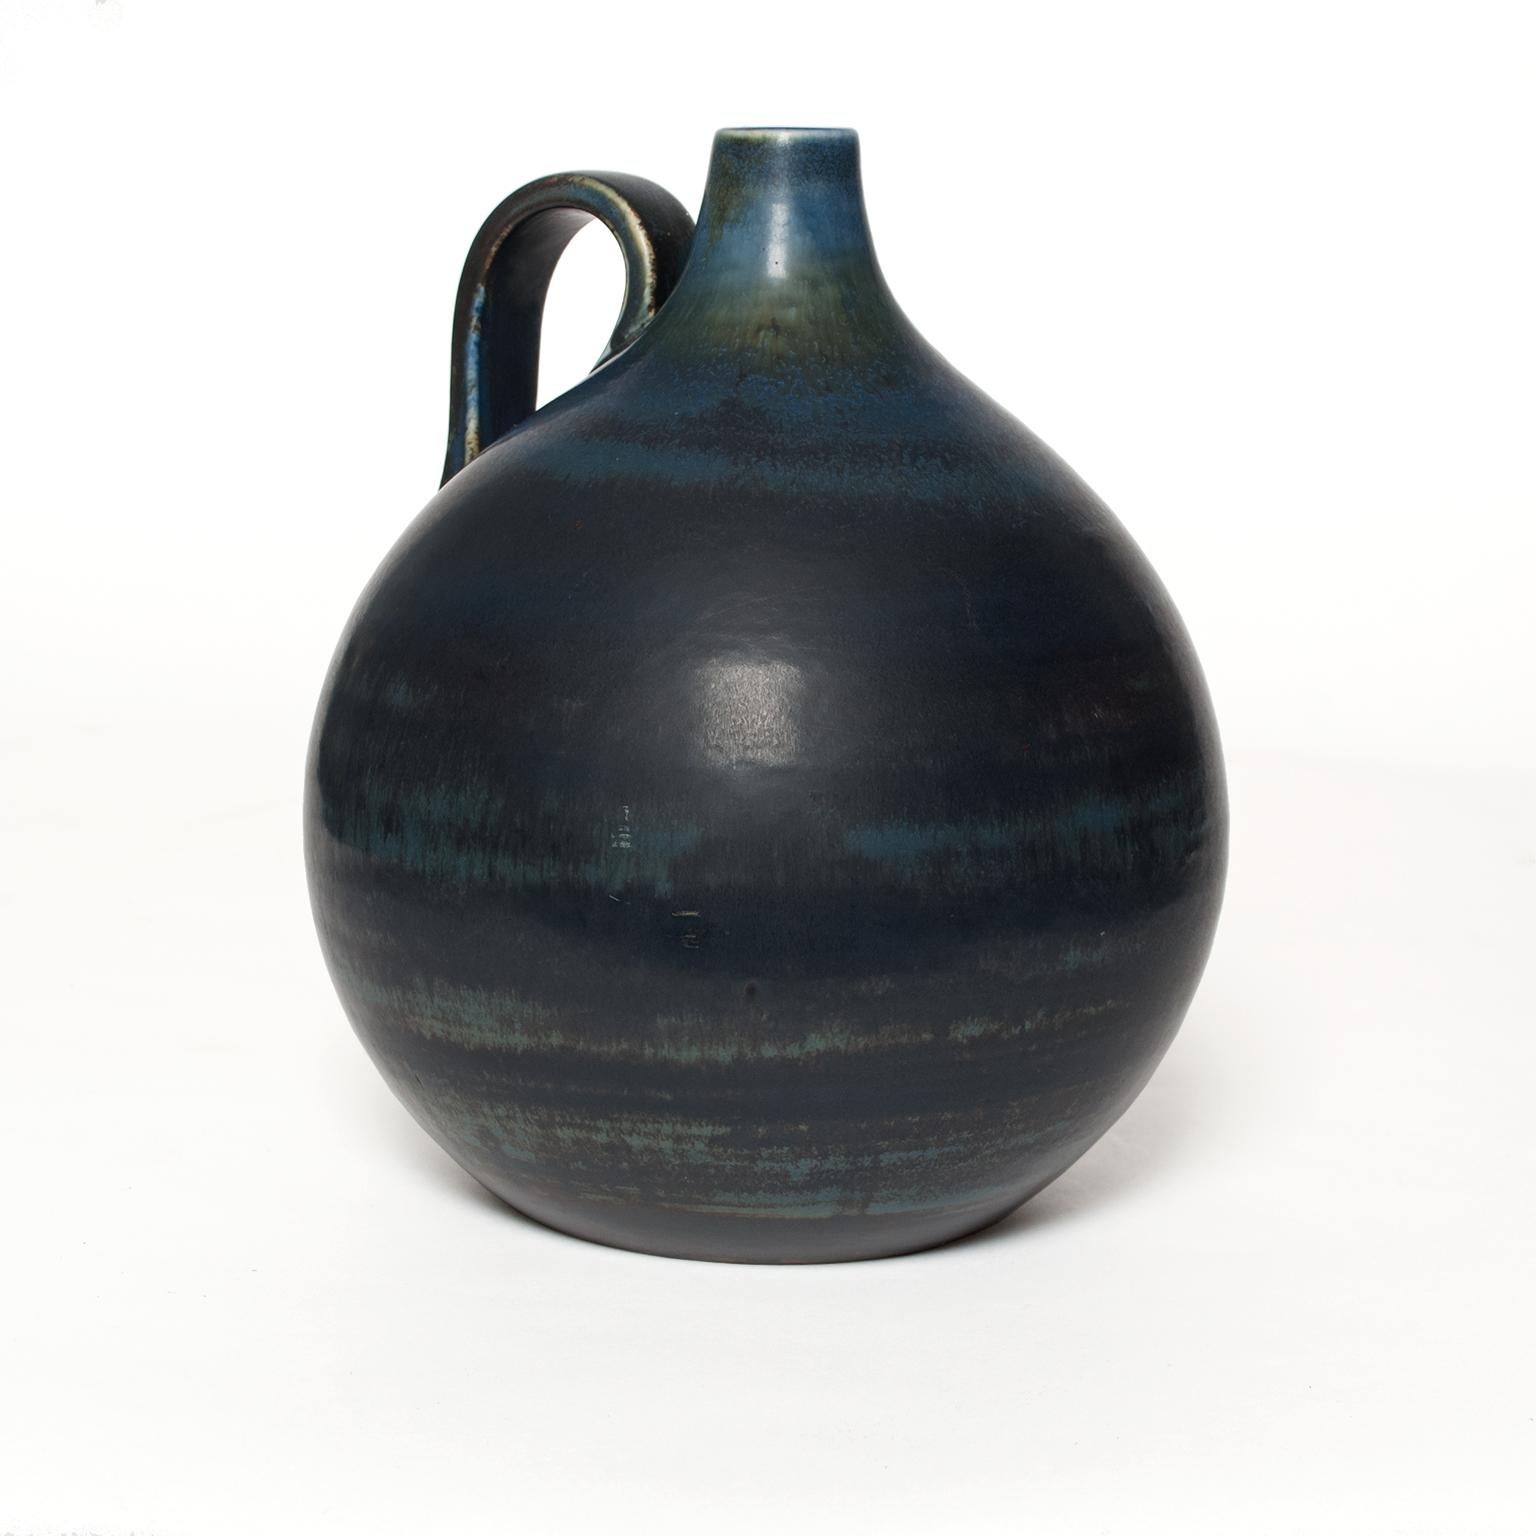 Ein einzigartiges schwedisches Art-Déco-Keramikgefäß mit Henkel, das in einer Reihe von mittleren bis tiefen Blautönen gehalten ist. Hergestellt von Gertrud Lonegren für Rorstrand.
Maße: Höhe 10